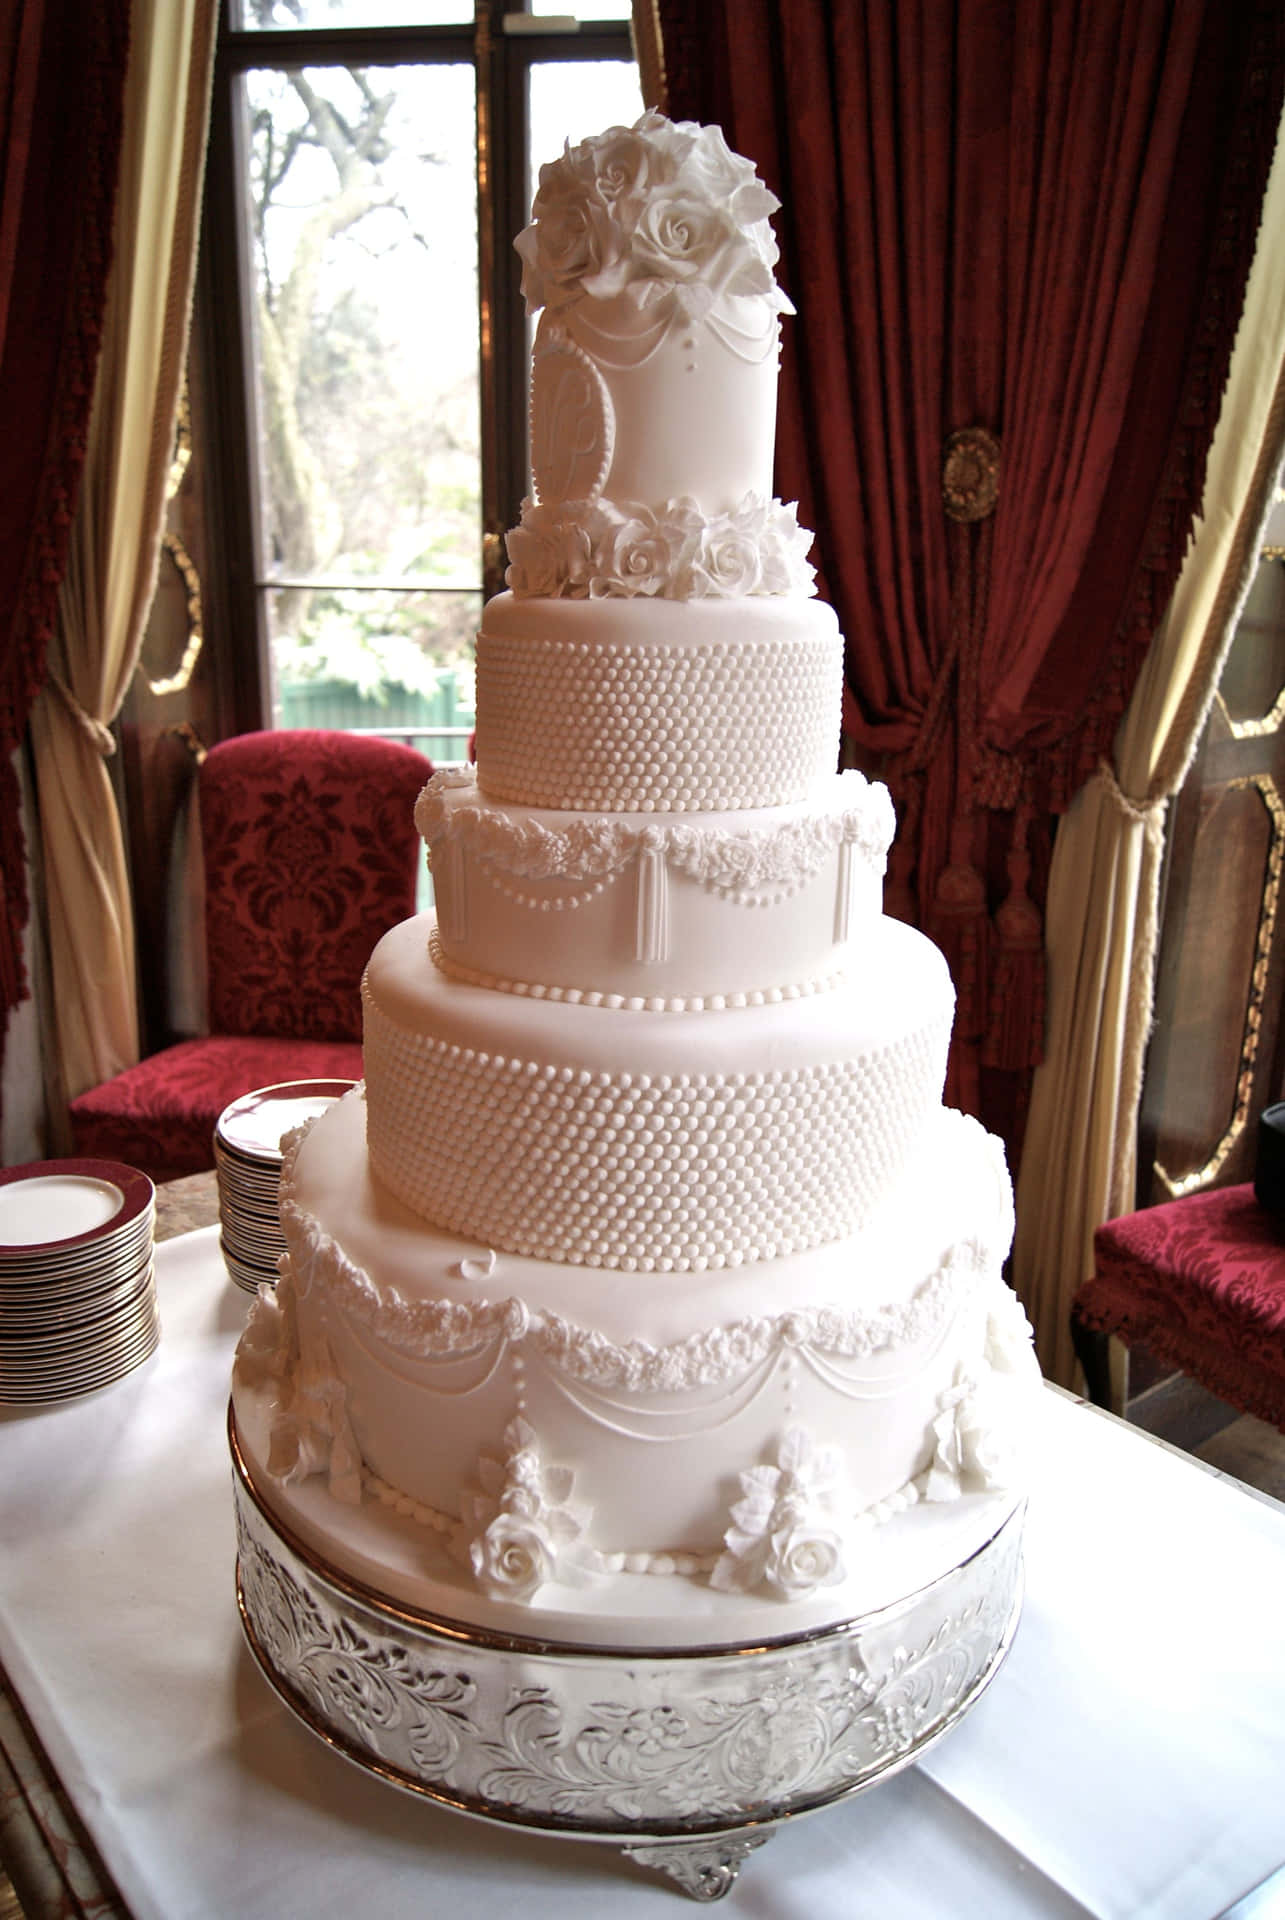 A White Wedding Cake